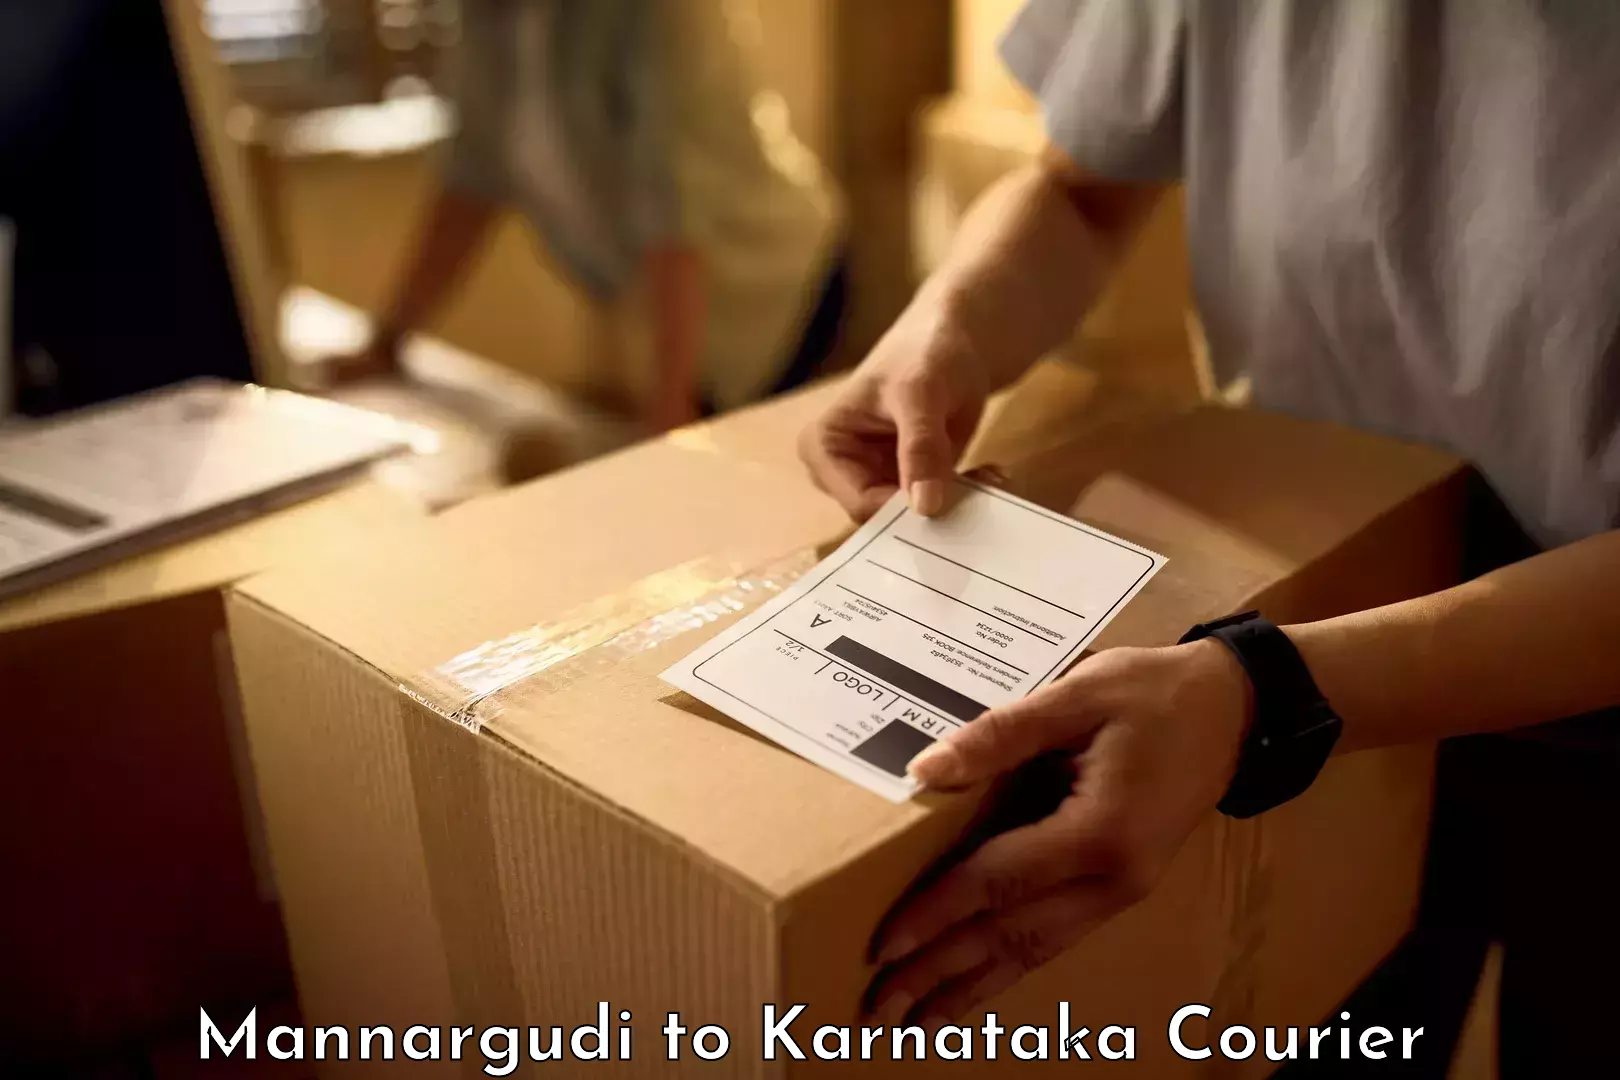 Luggage shipment specialists Mannargudi to Channagiri